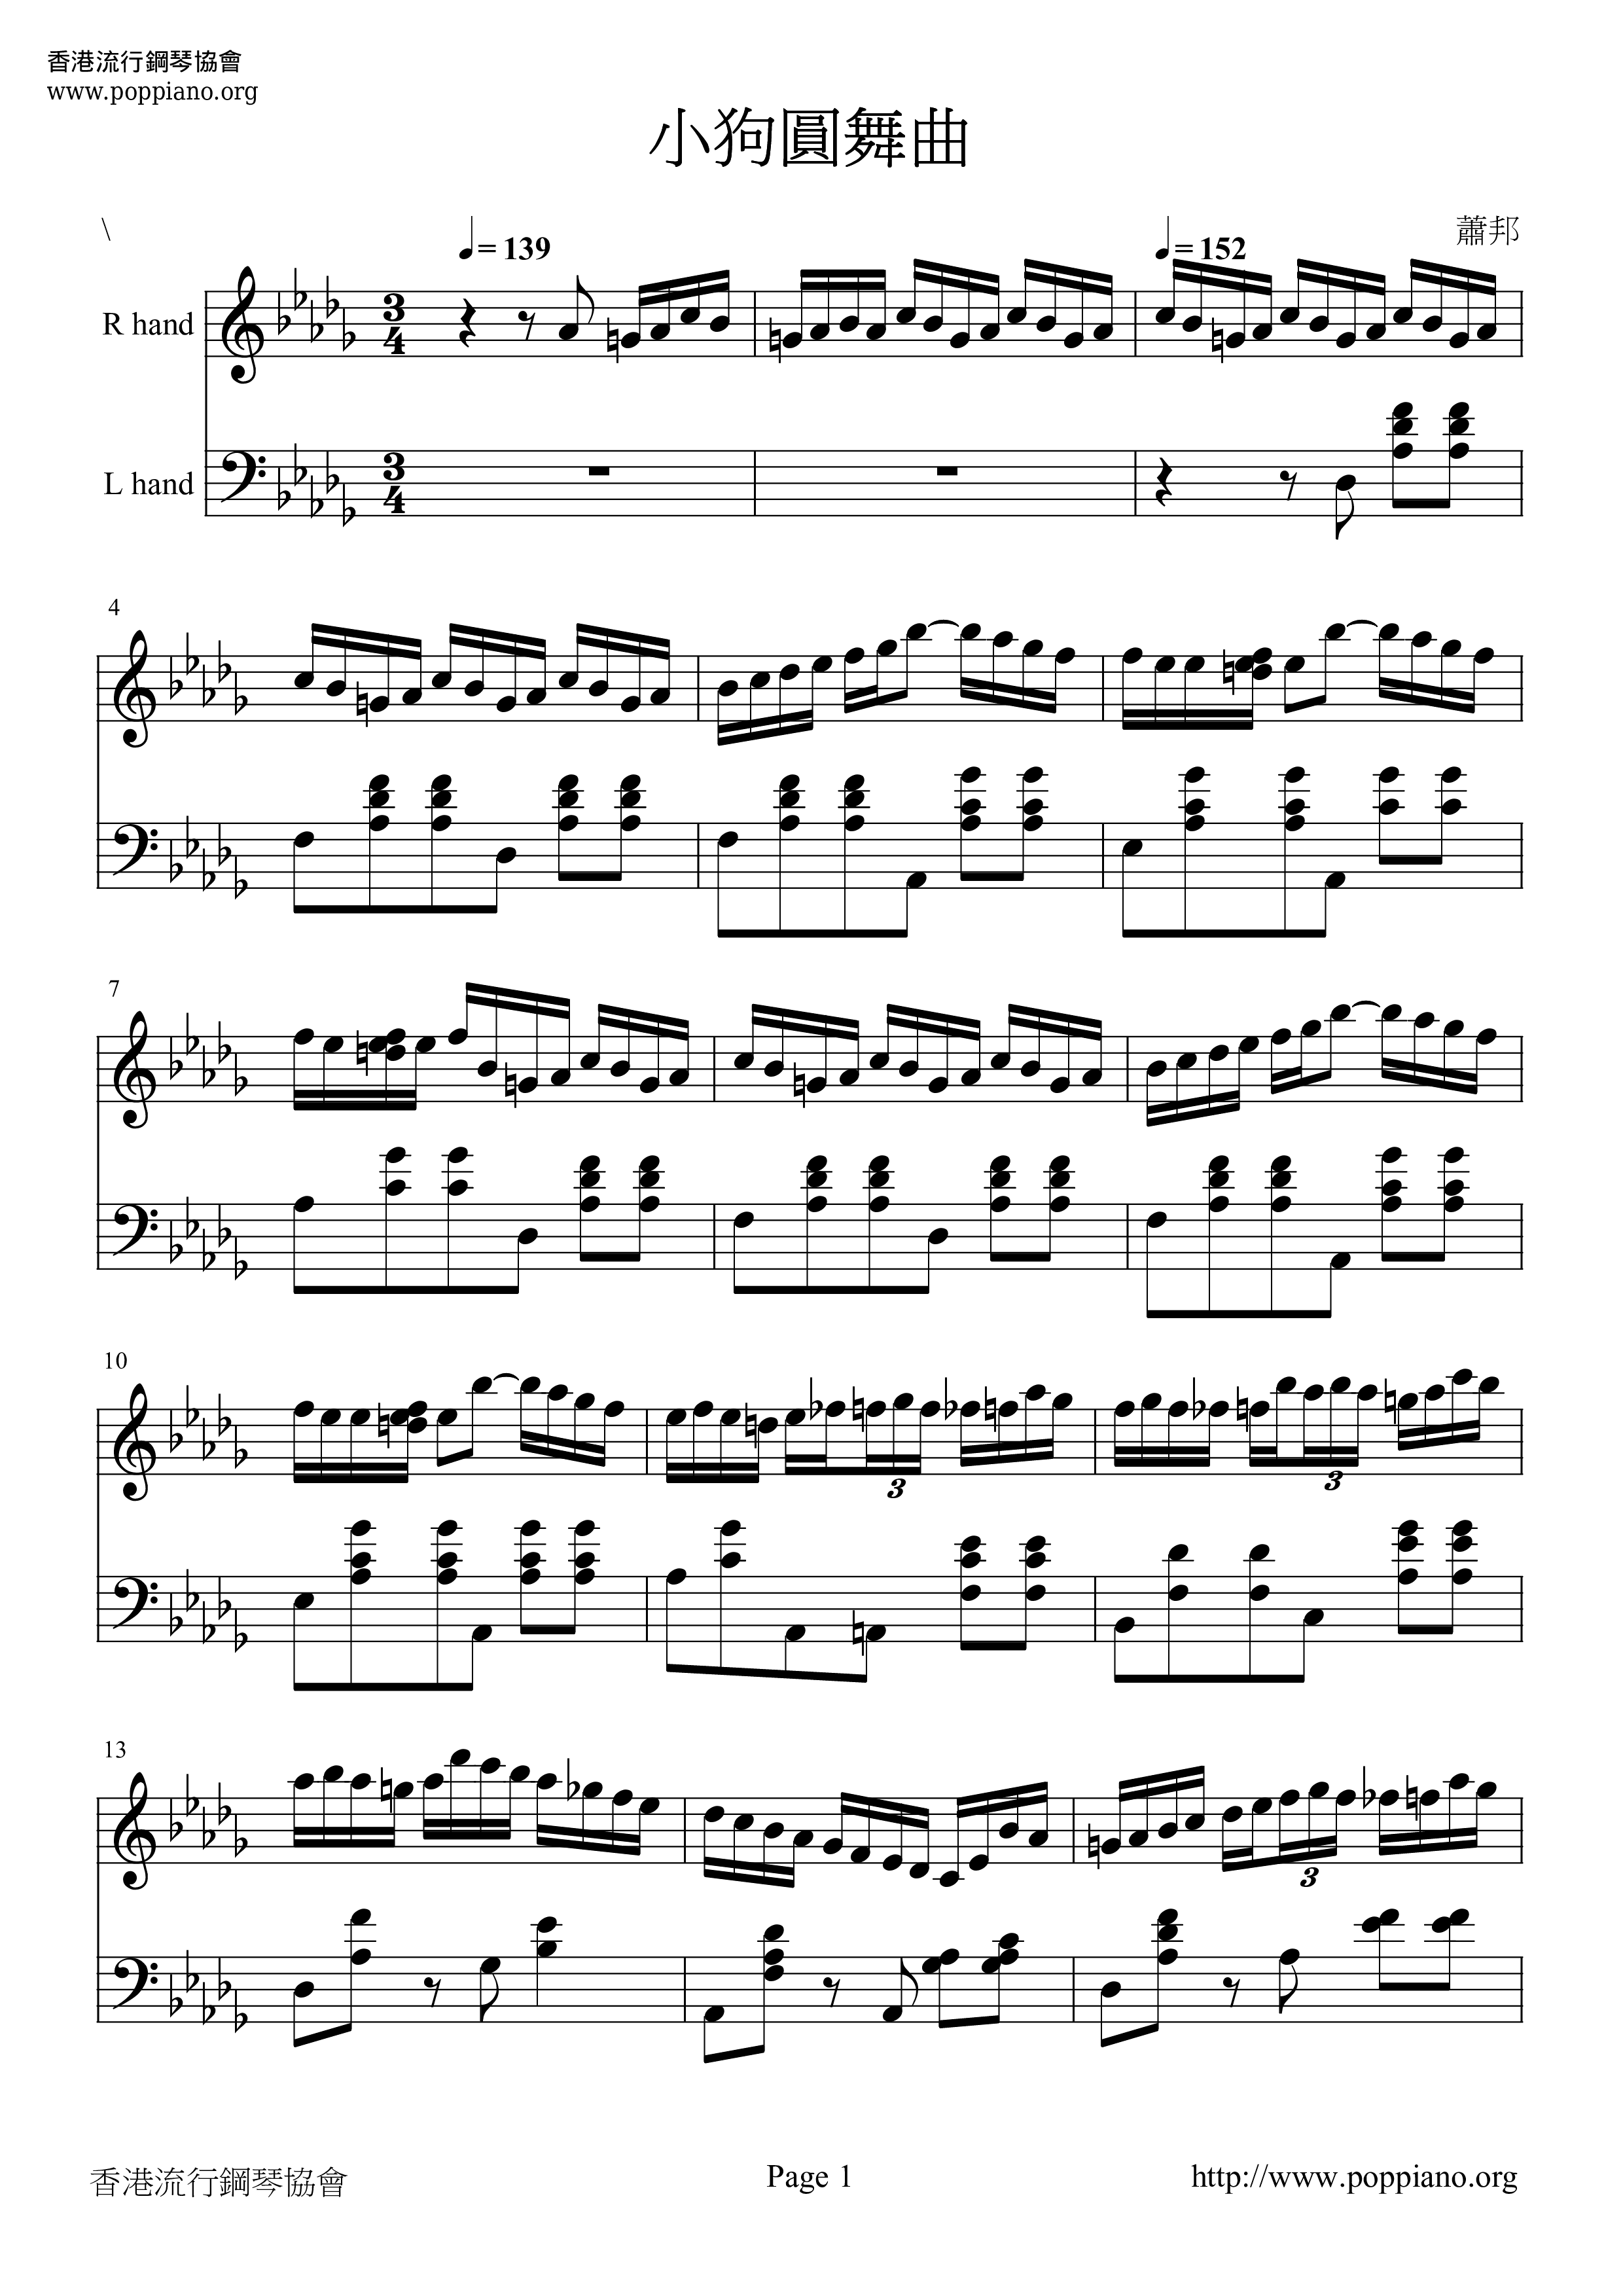 Waltz Op. 64, No. 1 Minute Waltz (小狗圓舞曲) Score